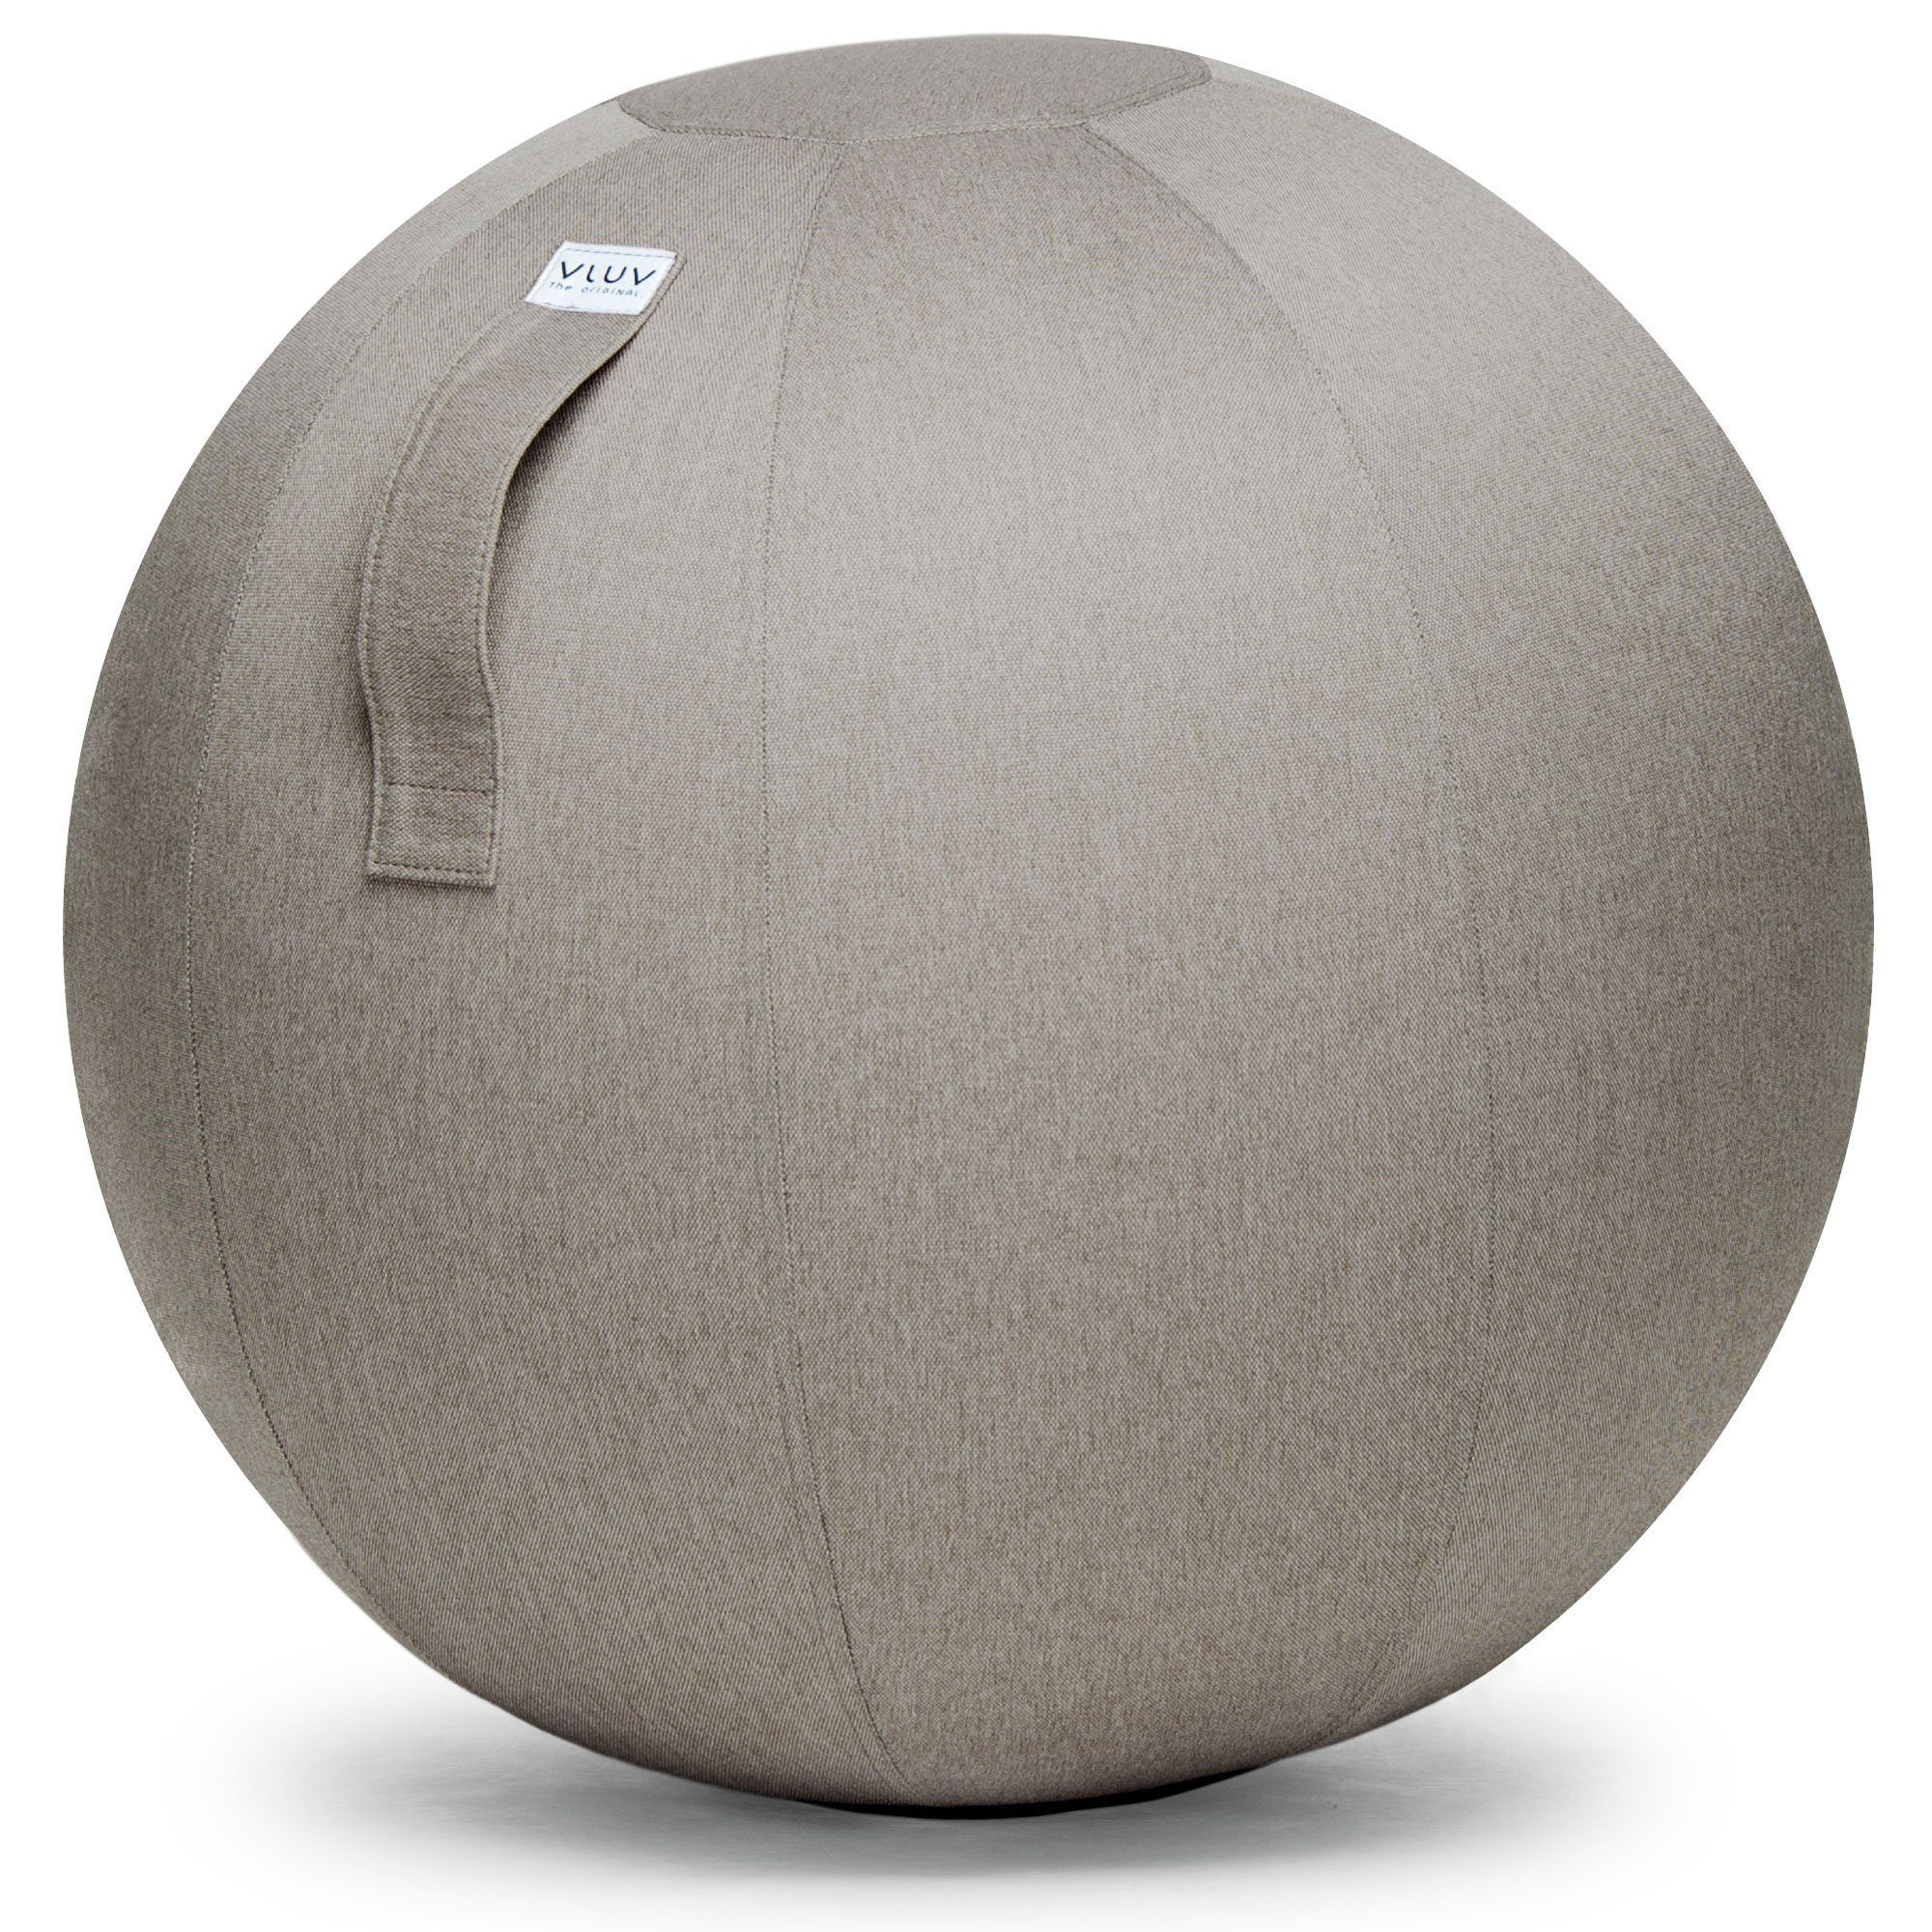 VLUV Sitzball BOL LEIV Stoff-Sitzball, ergonomisches Sitzmöbel für Büro und Zuhause, Farbe: Stone (beige), Ø 60cm - 65cm, Möbelbezugsstoff, robust und formstabil, mit Tragegriff | Stühle